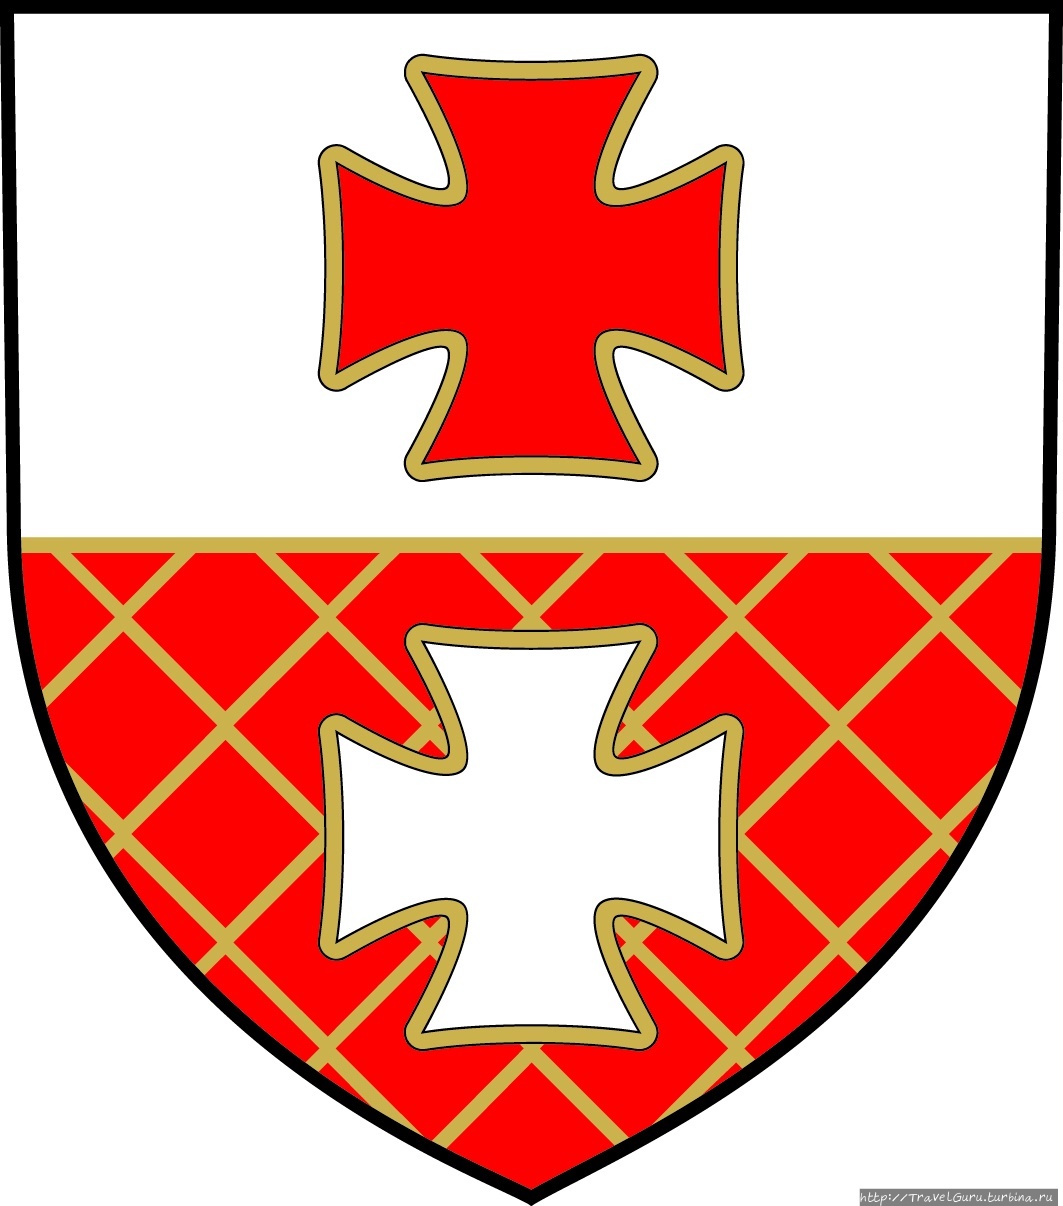 Герб города с символами крестоносцев Эльблонг, Польша